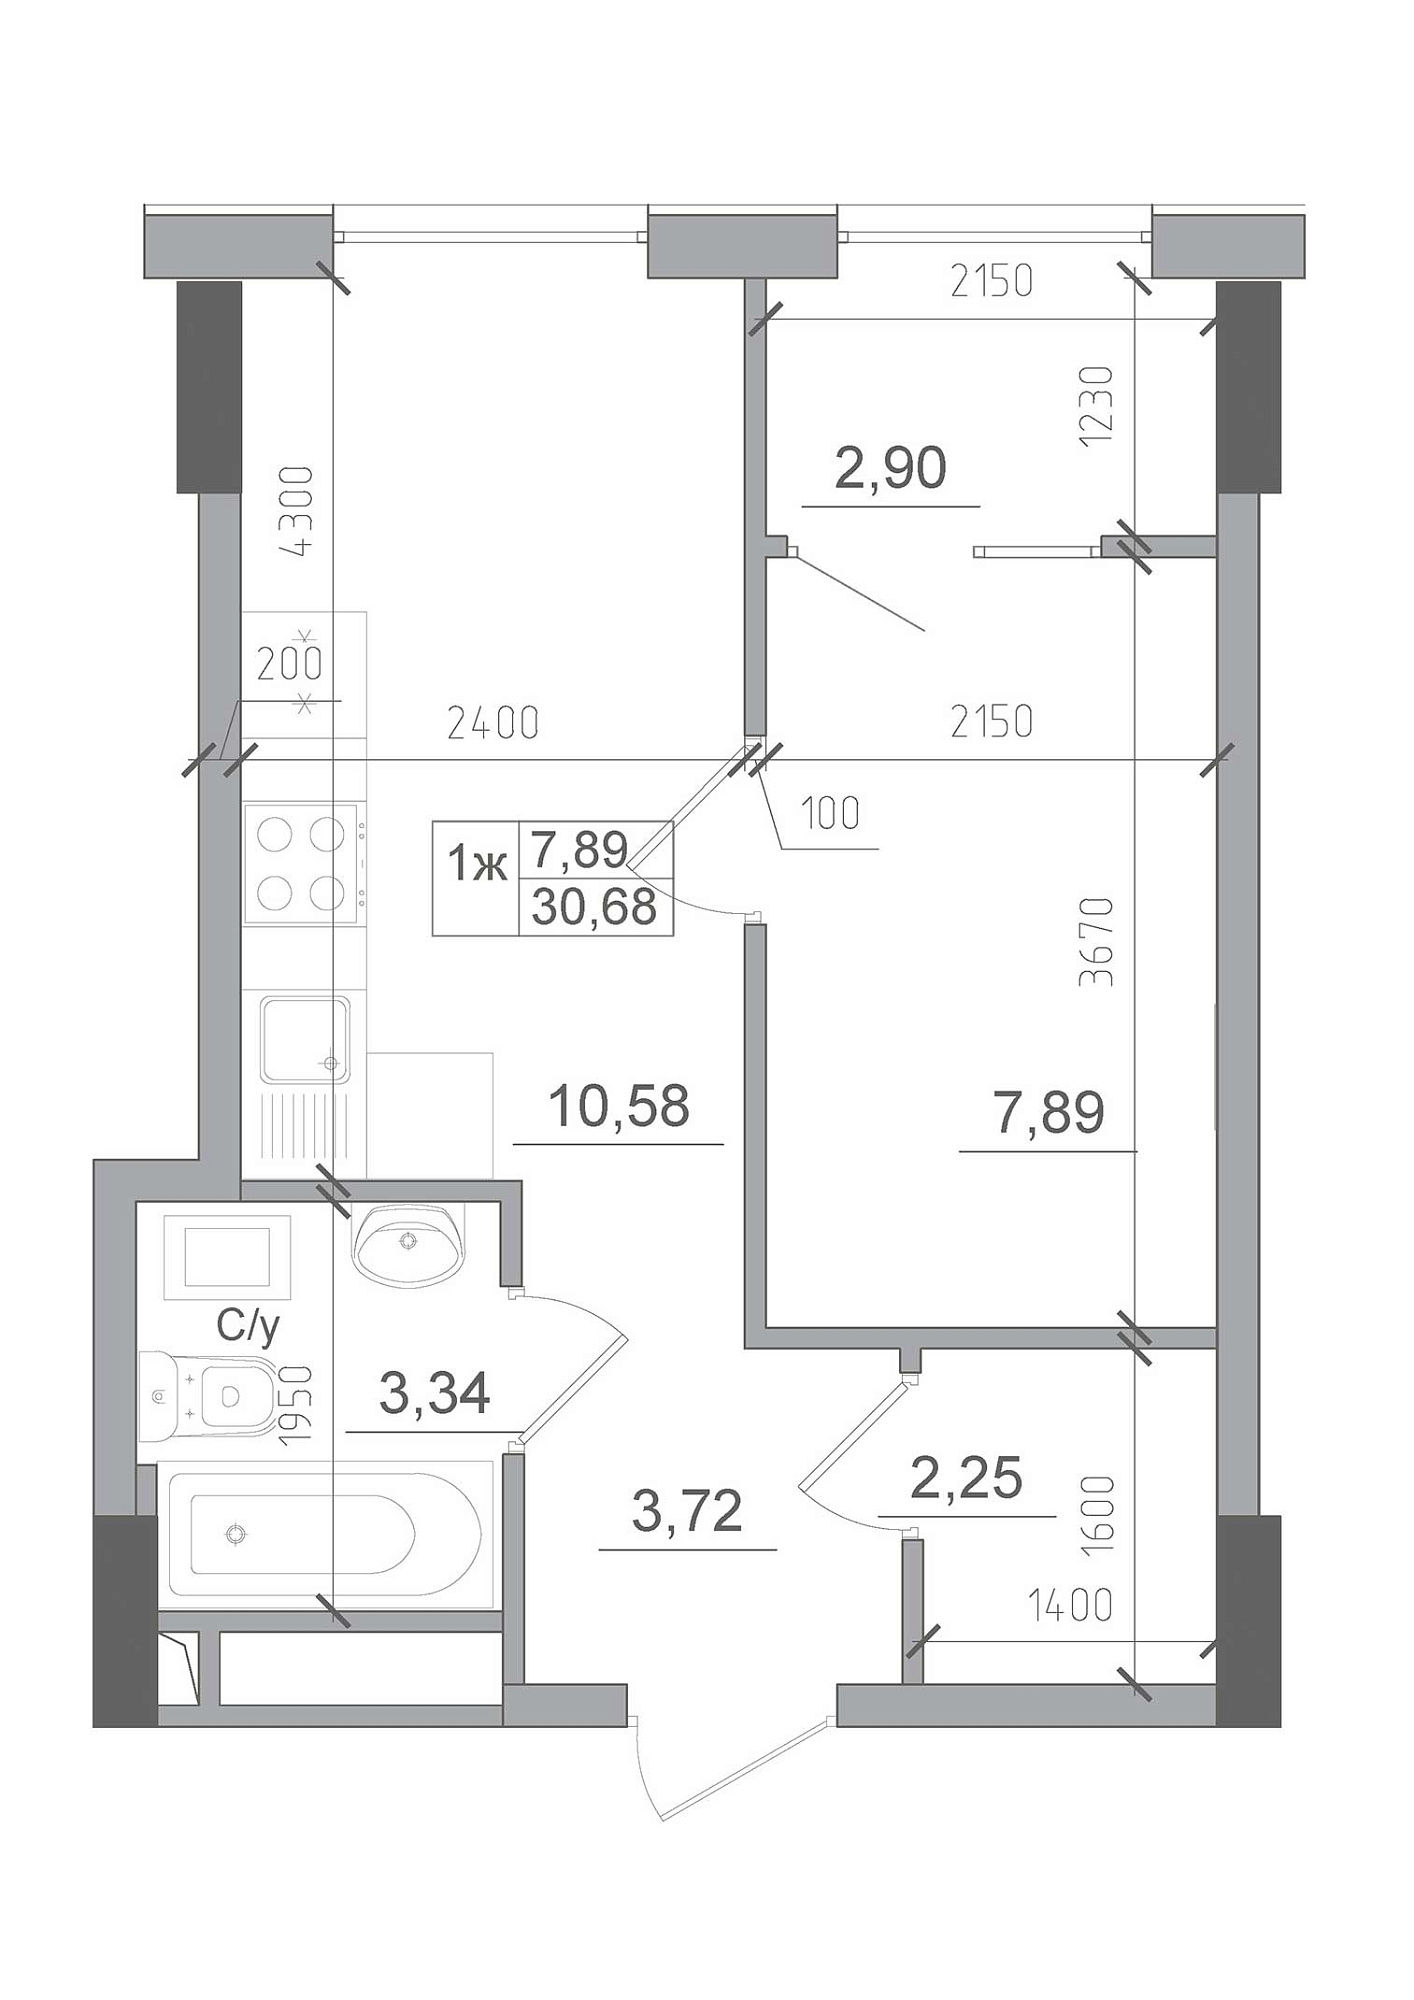 Планировка 1-к квартира площей 30.68м2, AB-22-08/00012.